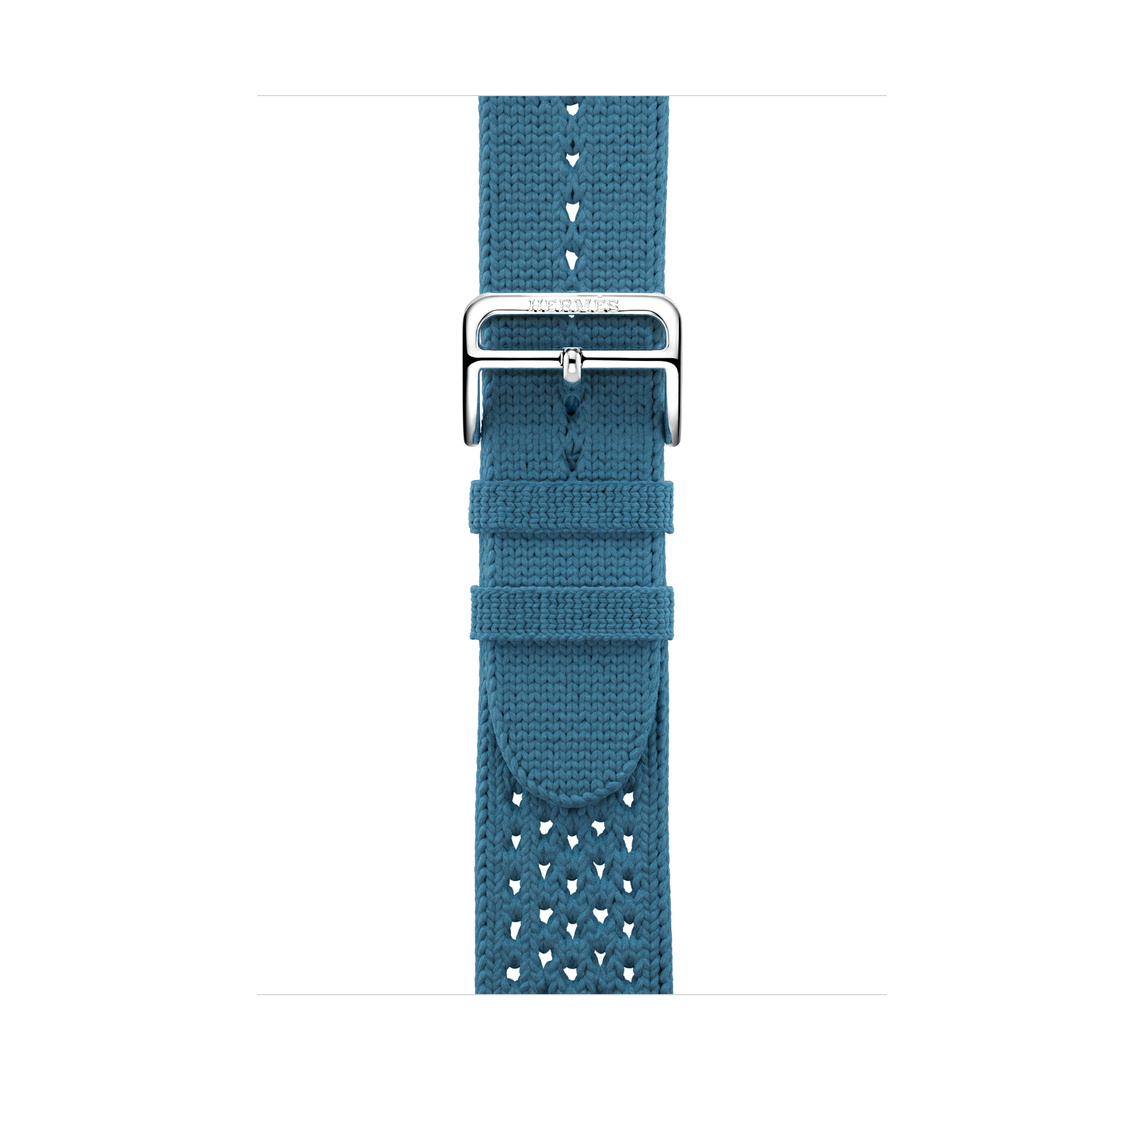 Bleu Jean 牛仔藍色 (藍色) Tricot Single Tour 錶帶，展示織紋布料搭配銀色不鏽鋼錶扣。